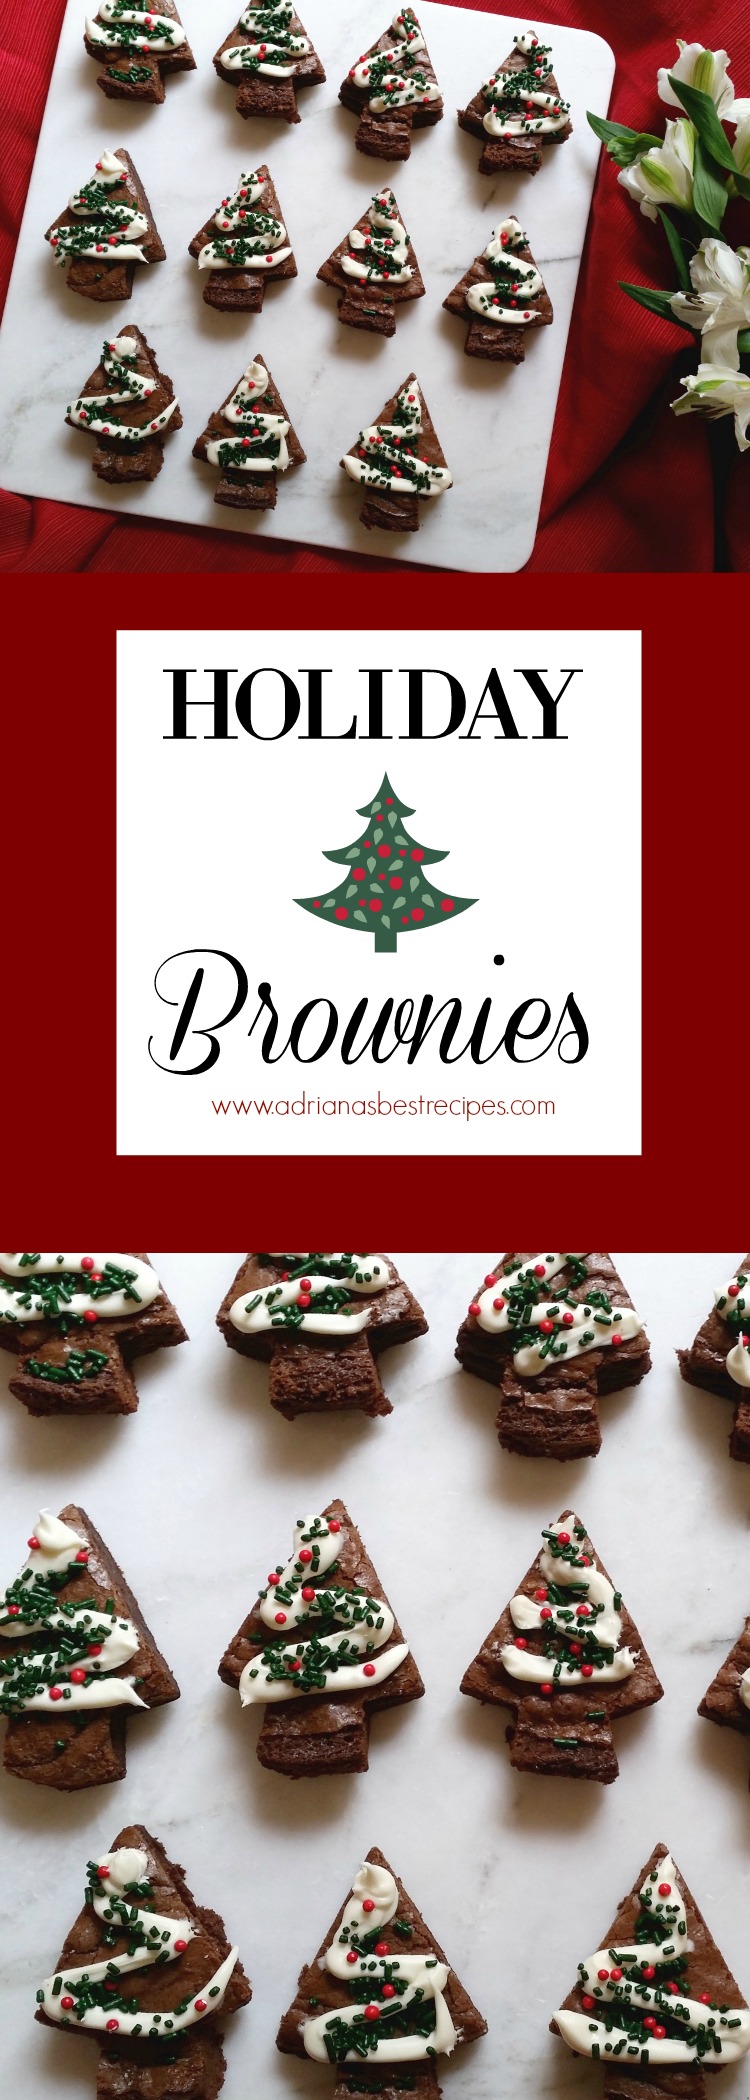 Receta para brownies navideños muy fácil y preparada con productos disponibles en el supermercado. Perfecta idea para las fiestas decembrinas